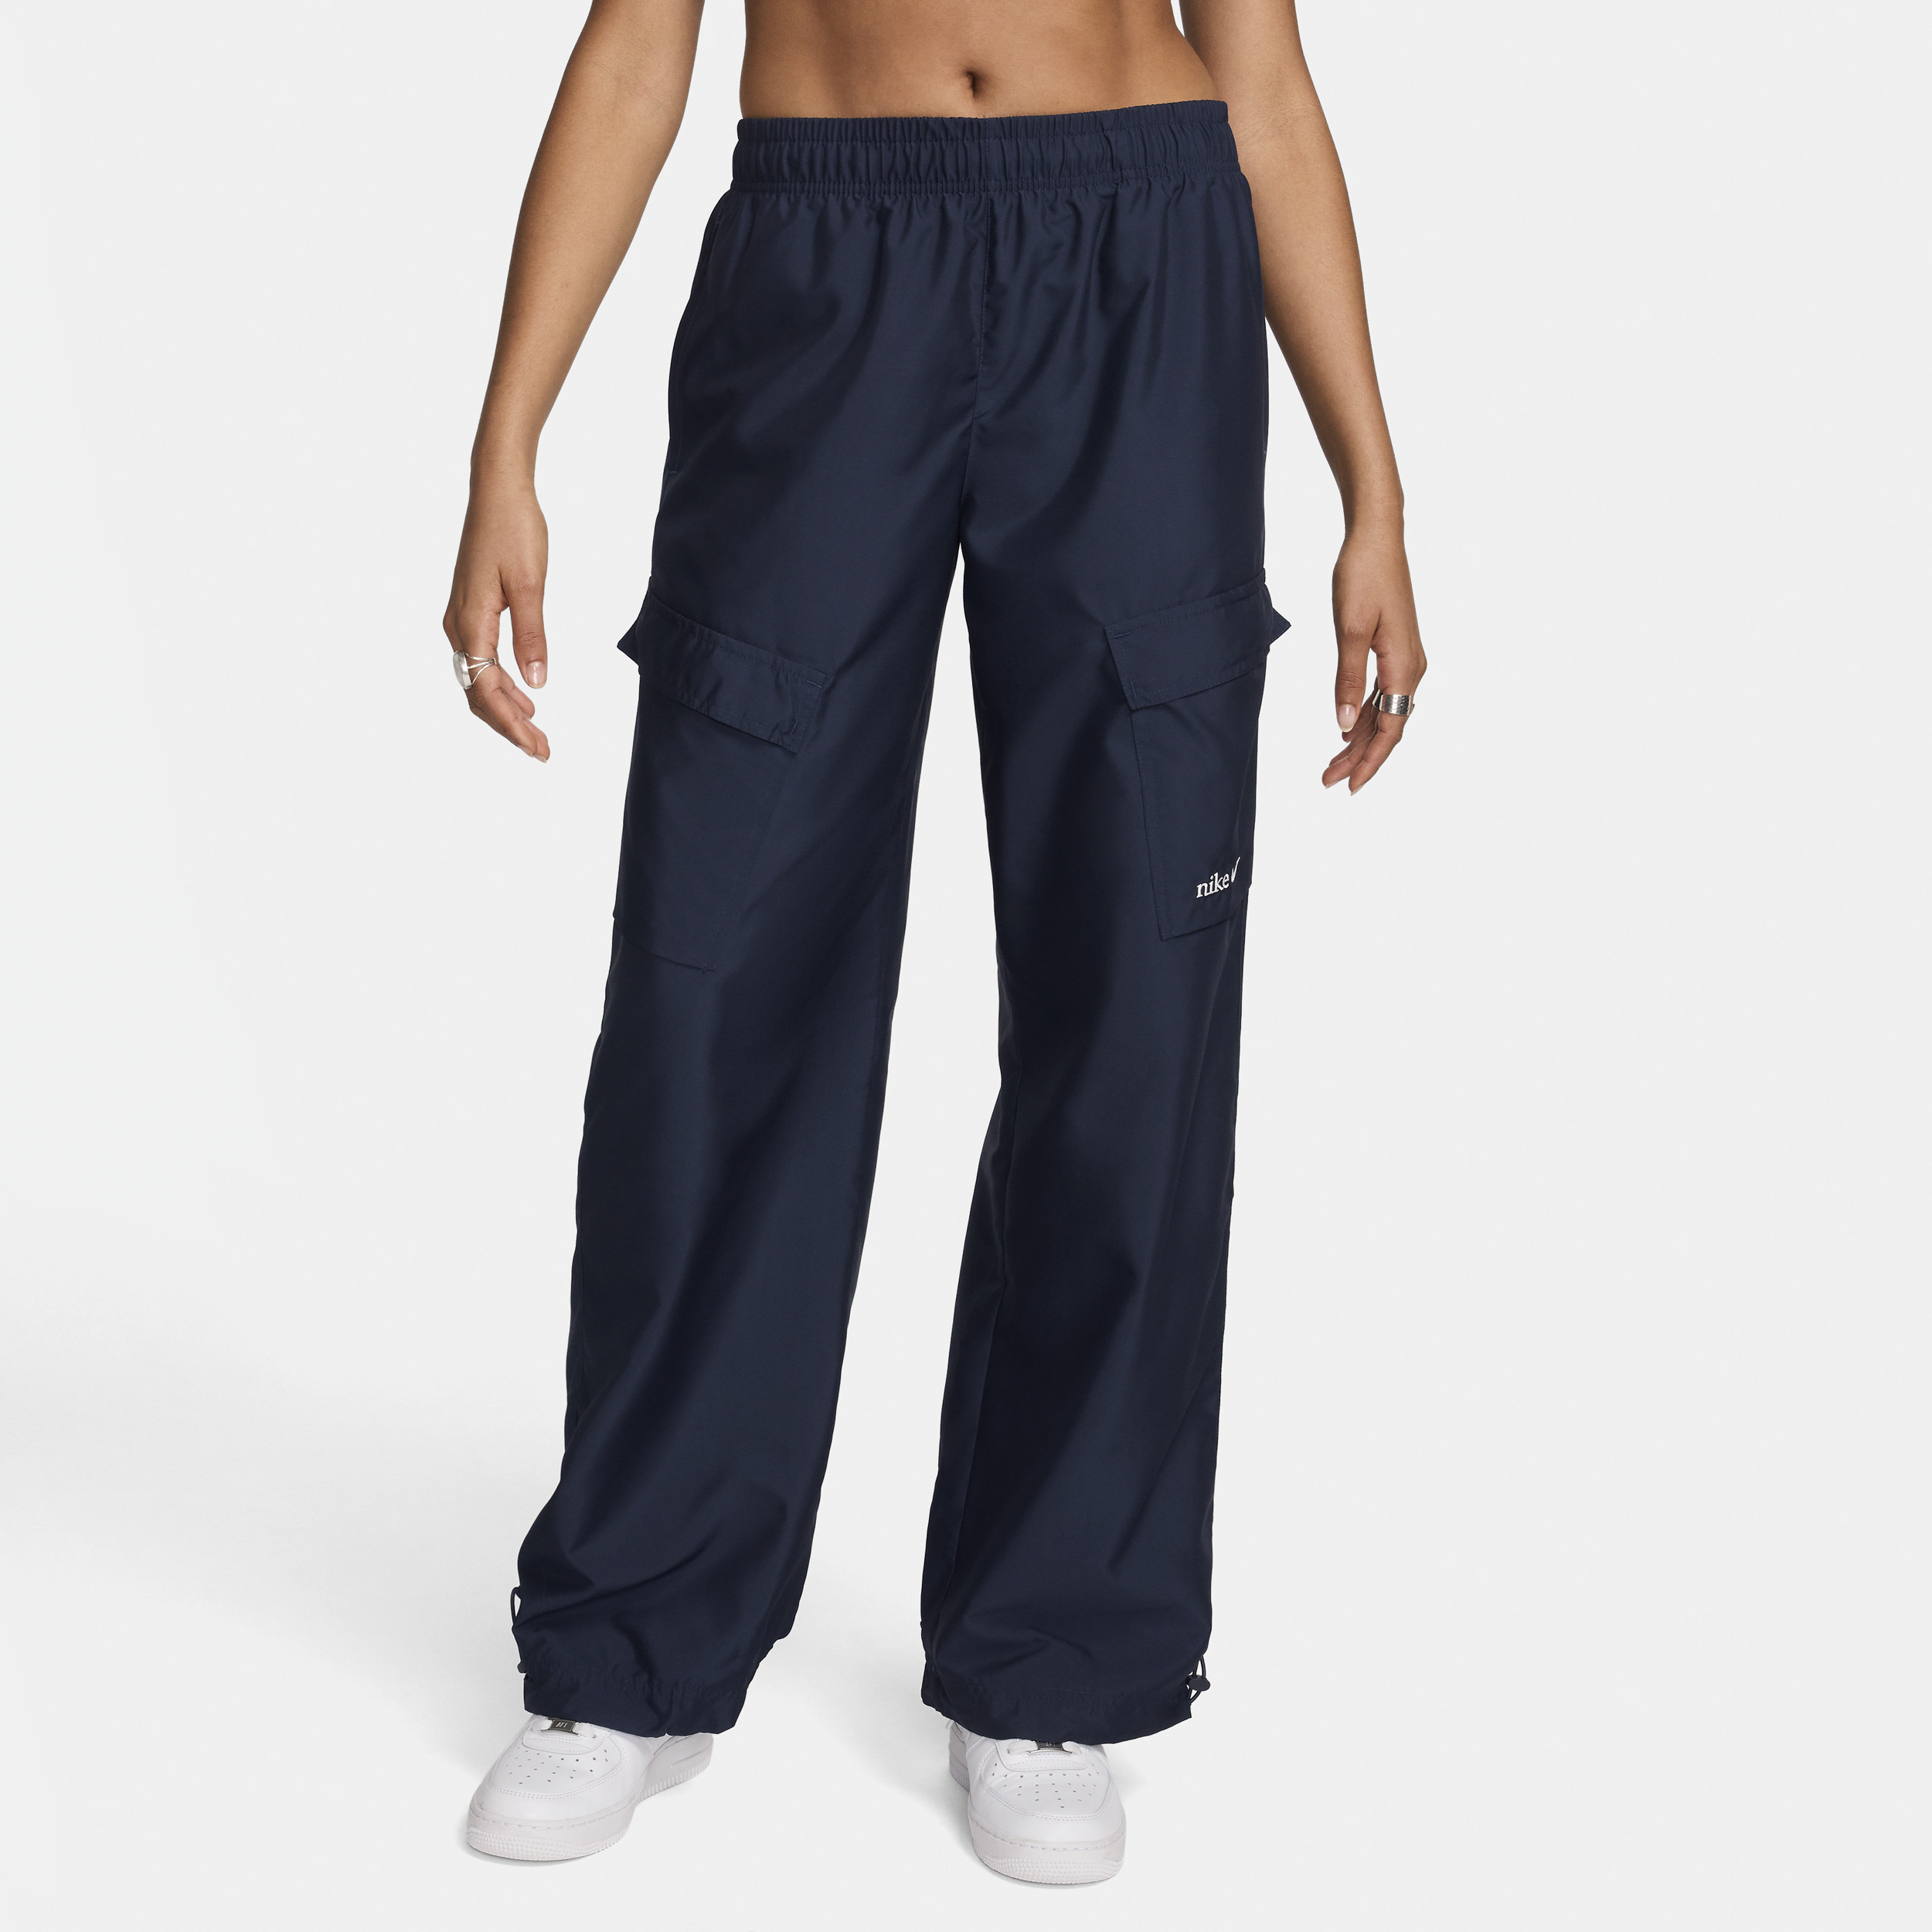 Pantaloni cargo woven Nike Sportswear - Donna - Blu